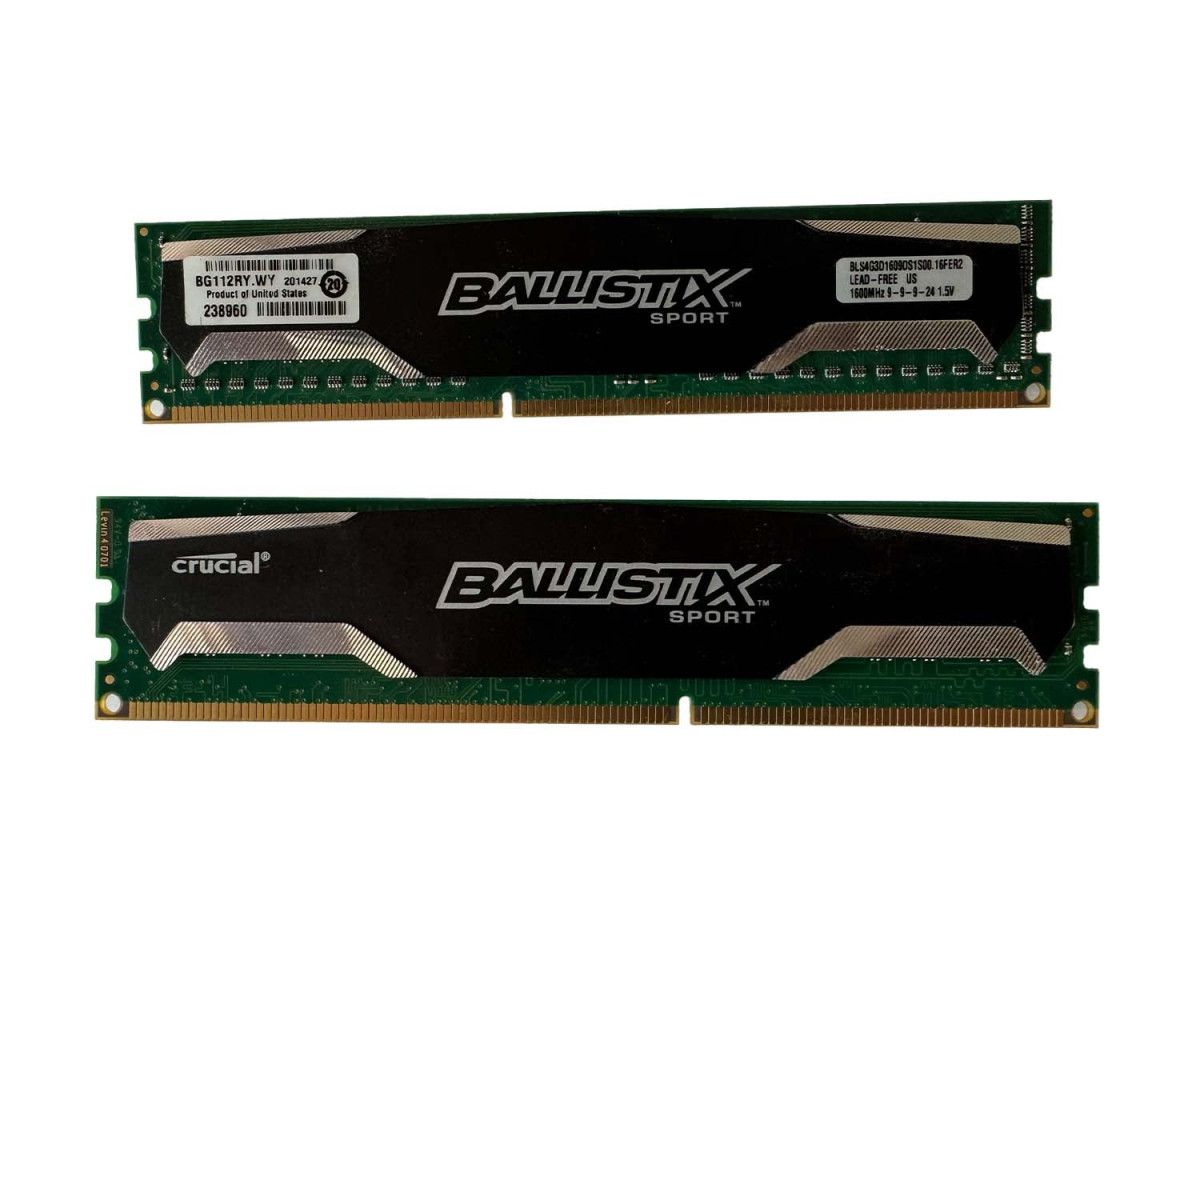 2x 4GB DDR3-1600 Memoria di gioco - BLS4G3D1609DS1S00 1 - Memstar